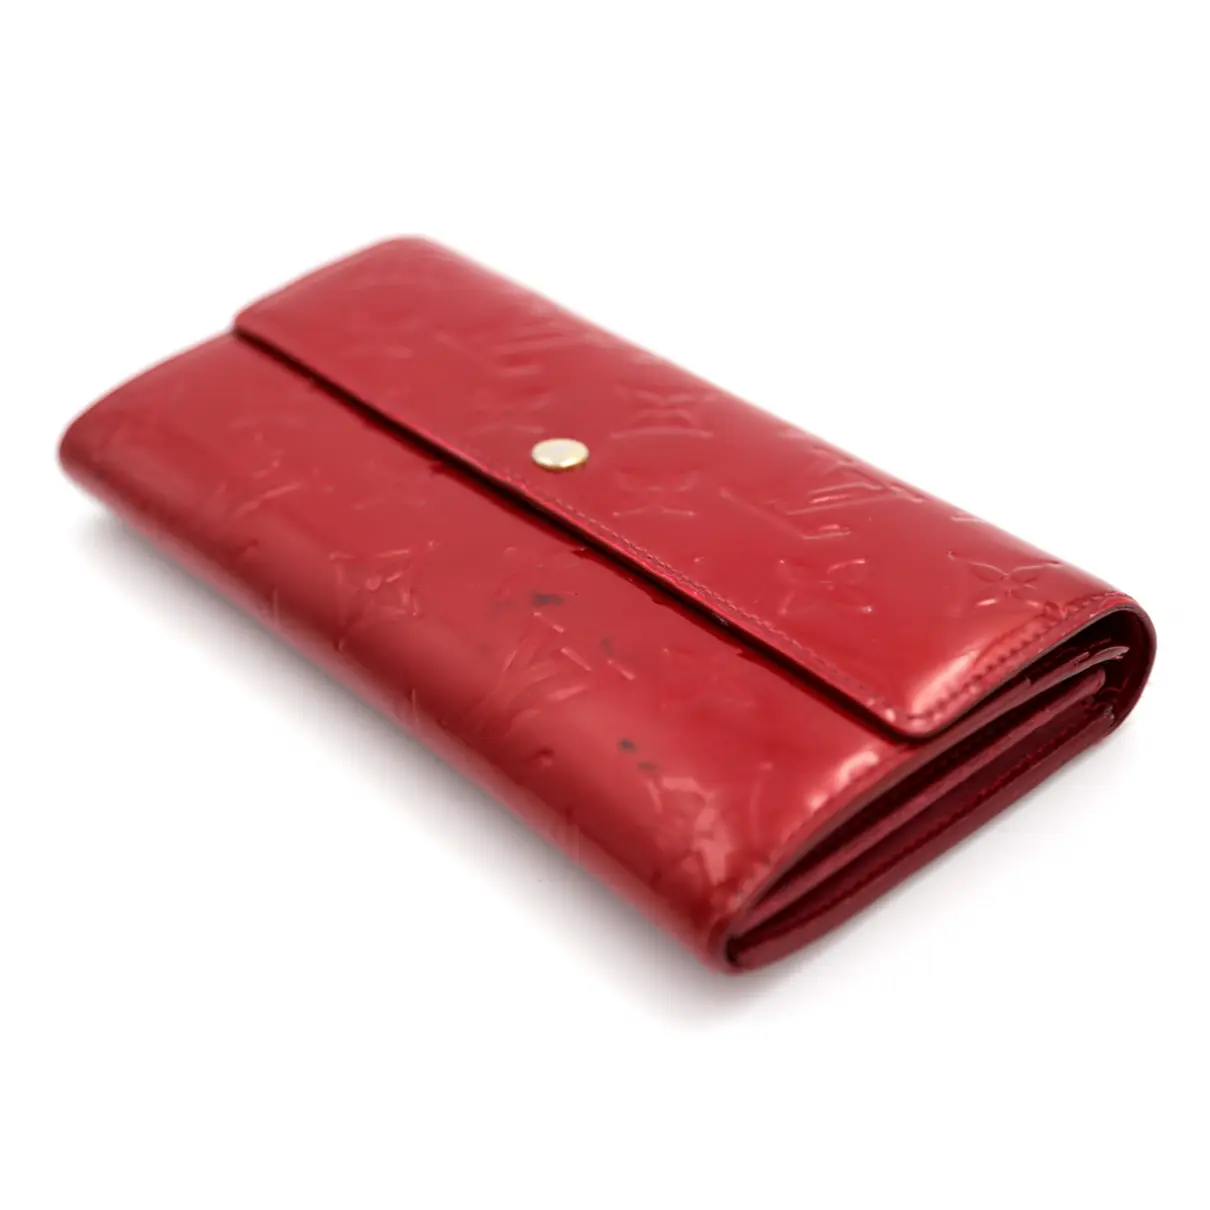 Sarah patent leather wallet Louis Vuitton